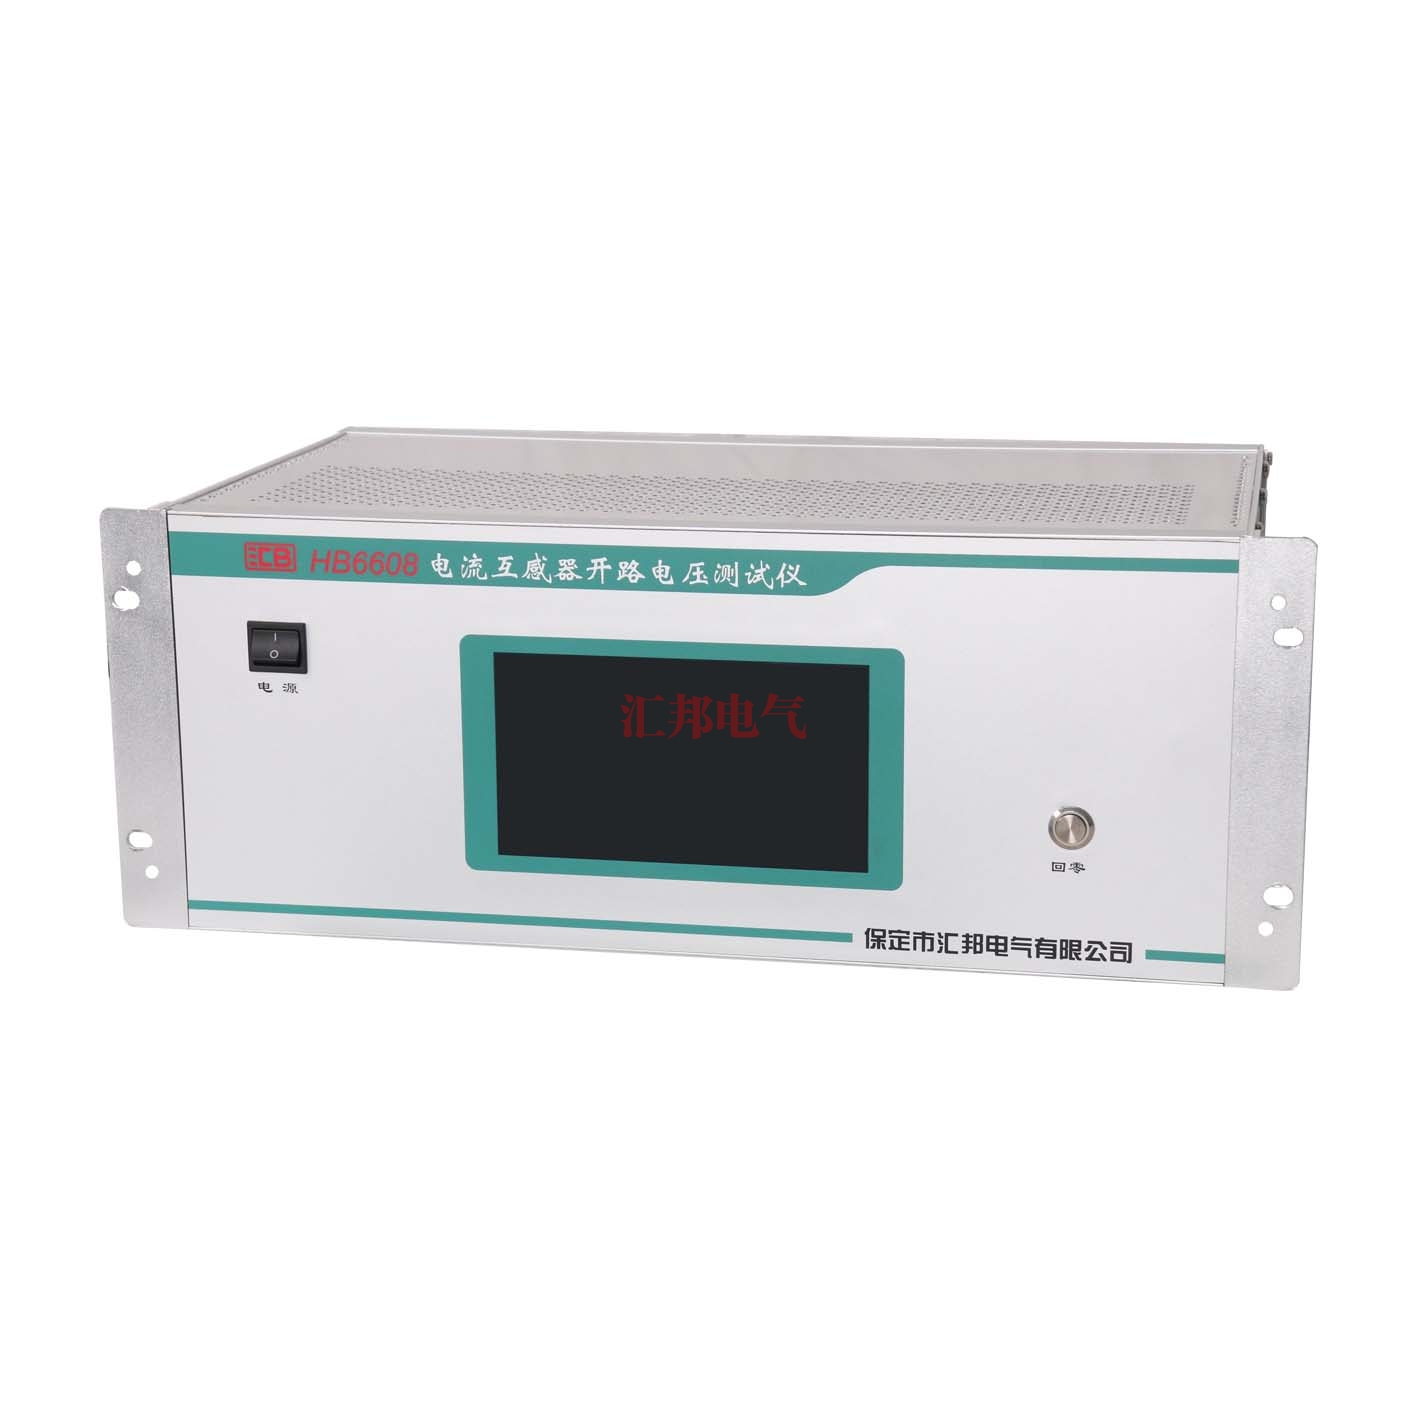 江西HB6608   电流互感器开路电压测试仪